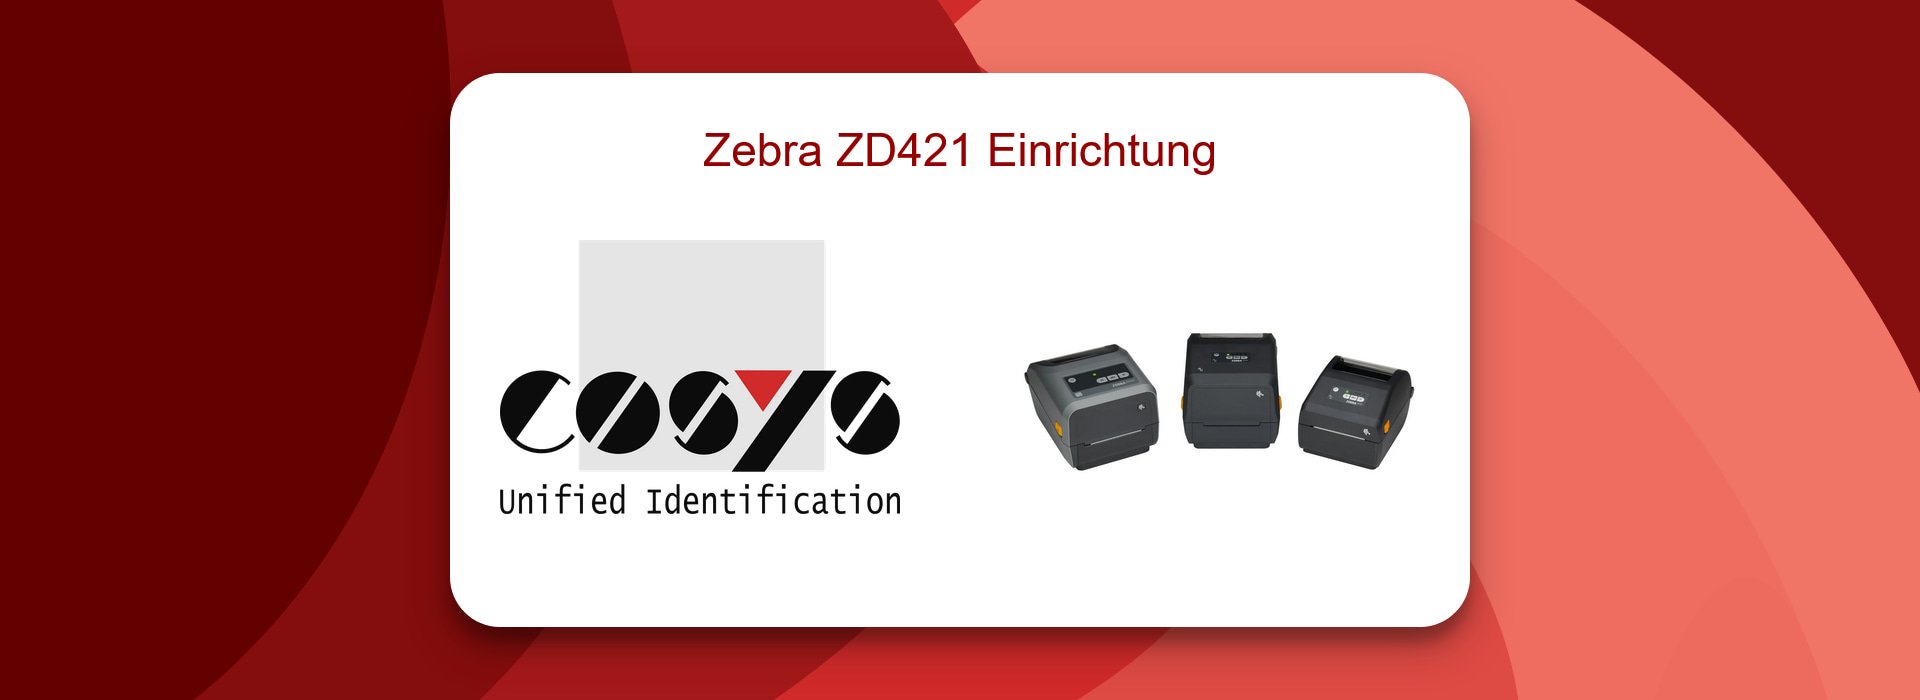 Zebra ZD421 Einrichtung: Schritt für Schritt